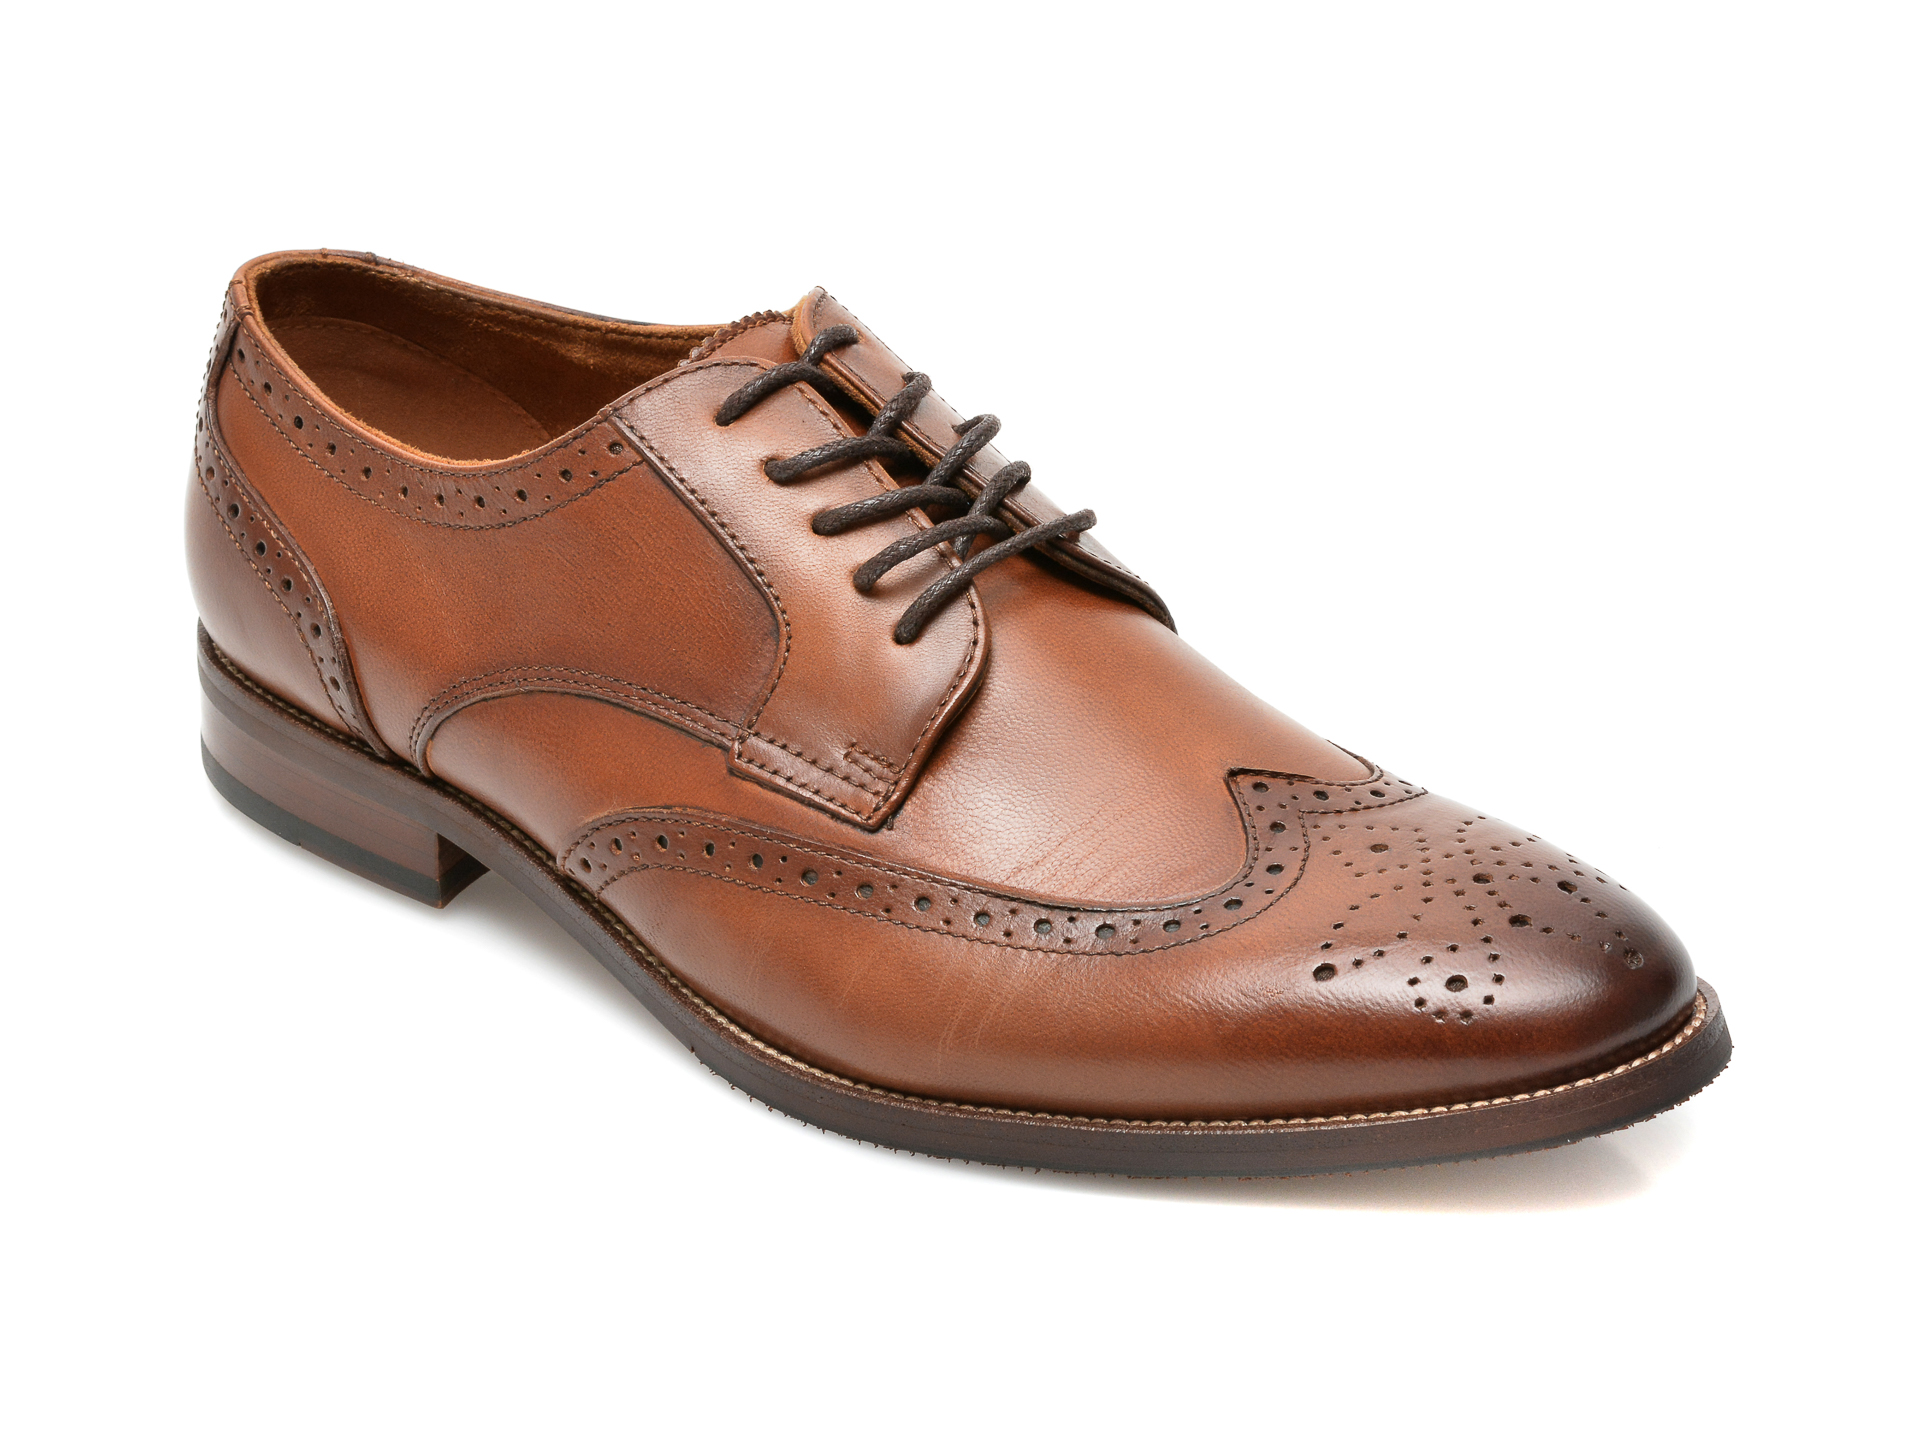 Pantofi ALDO maro, Larethienflex220, din piele naturala Aldo Aldo